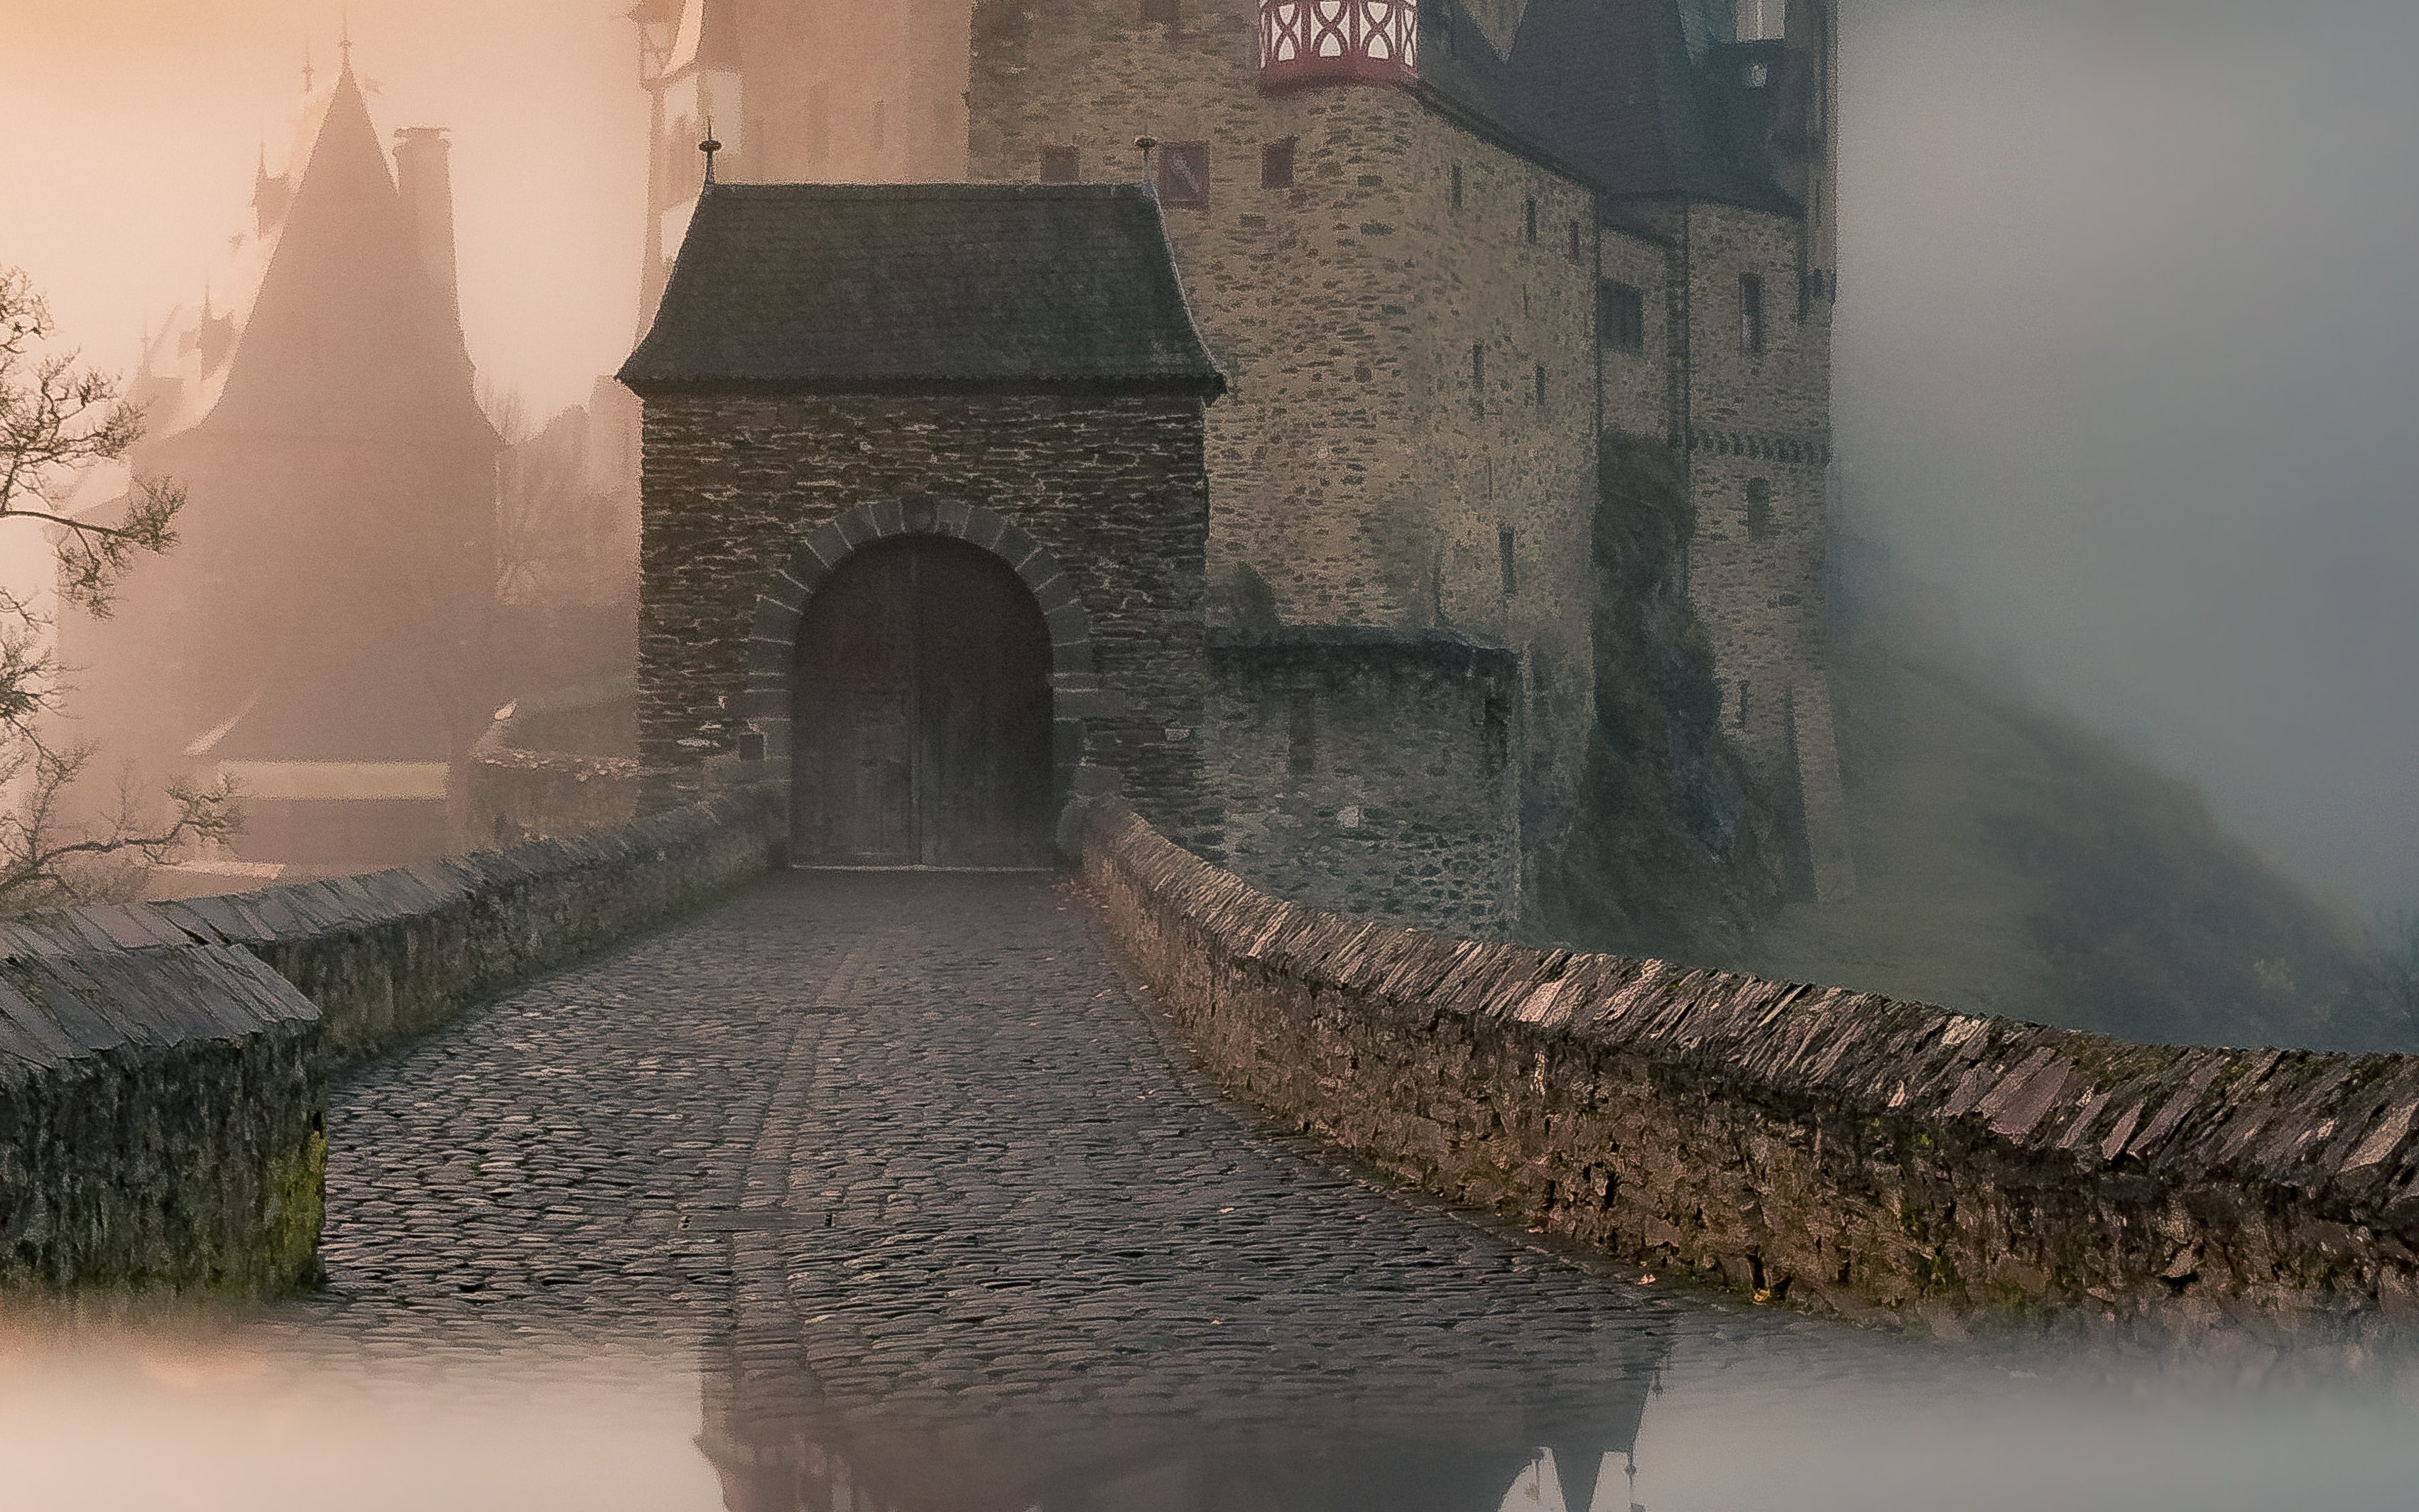 Imagem de um castelo antigo em neblina, com reflexo abaixo, remetendo a fantasia medieval. 